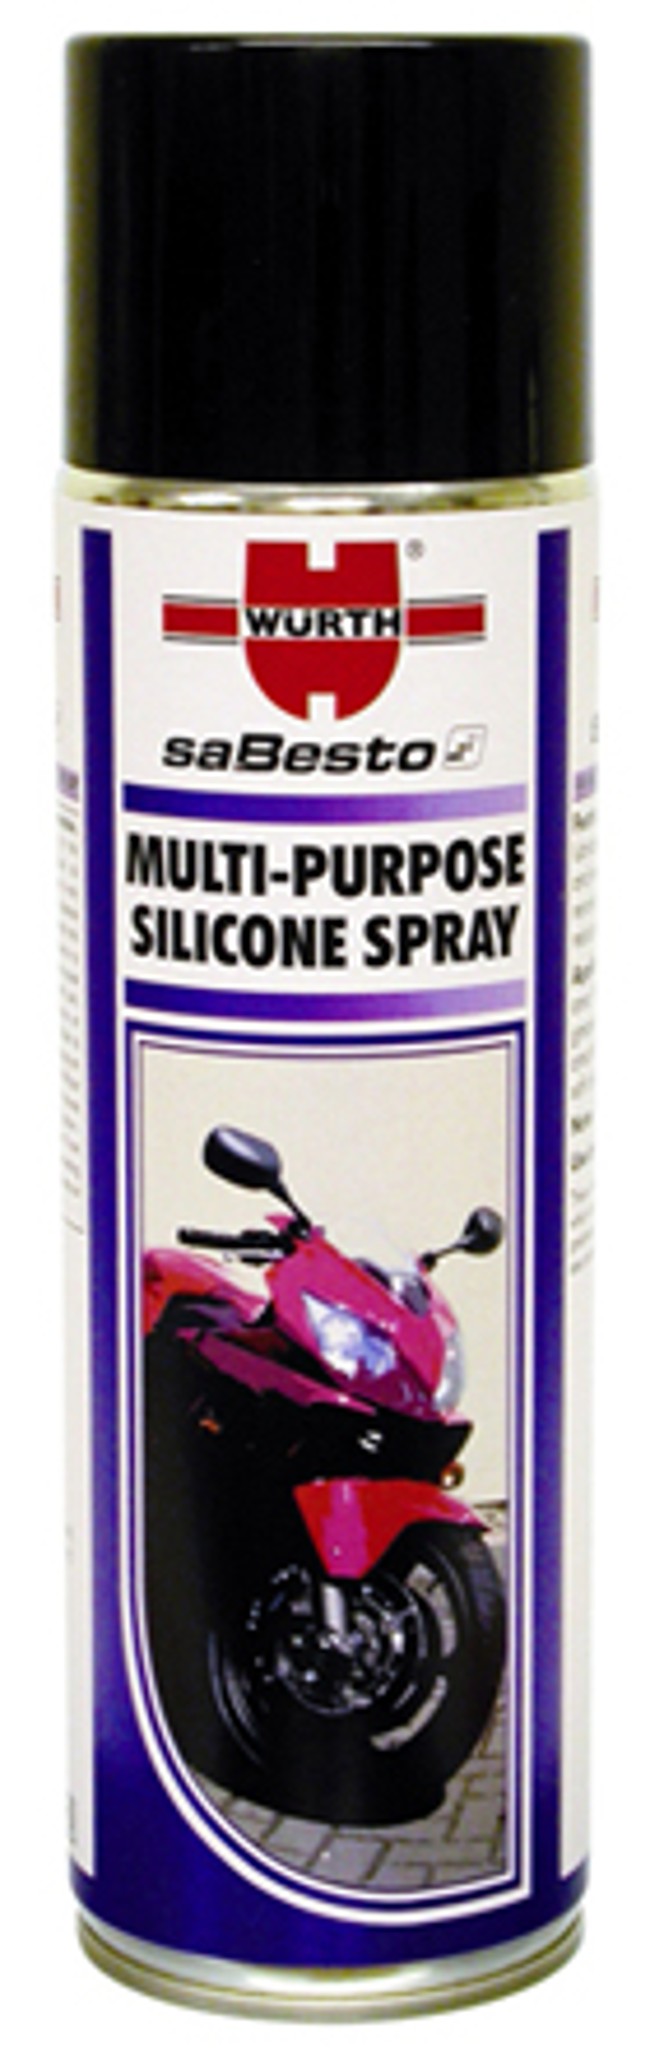 Würth motocyklowy uniwersalny spray silikonowy 500ml